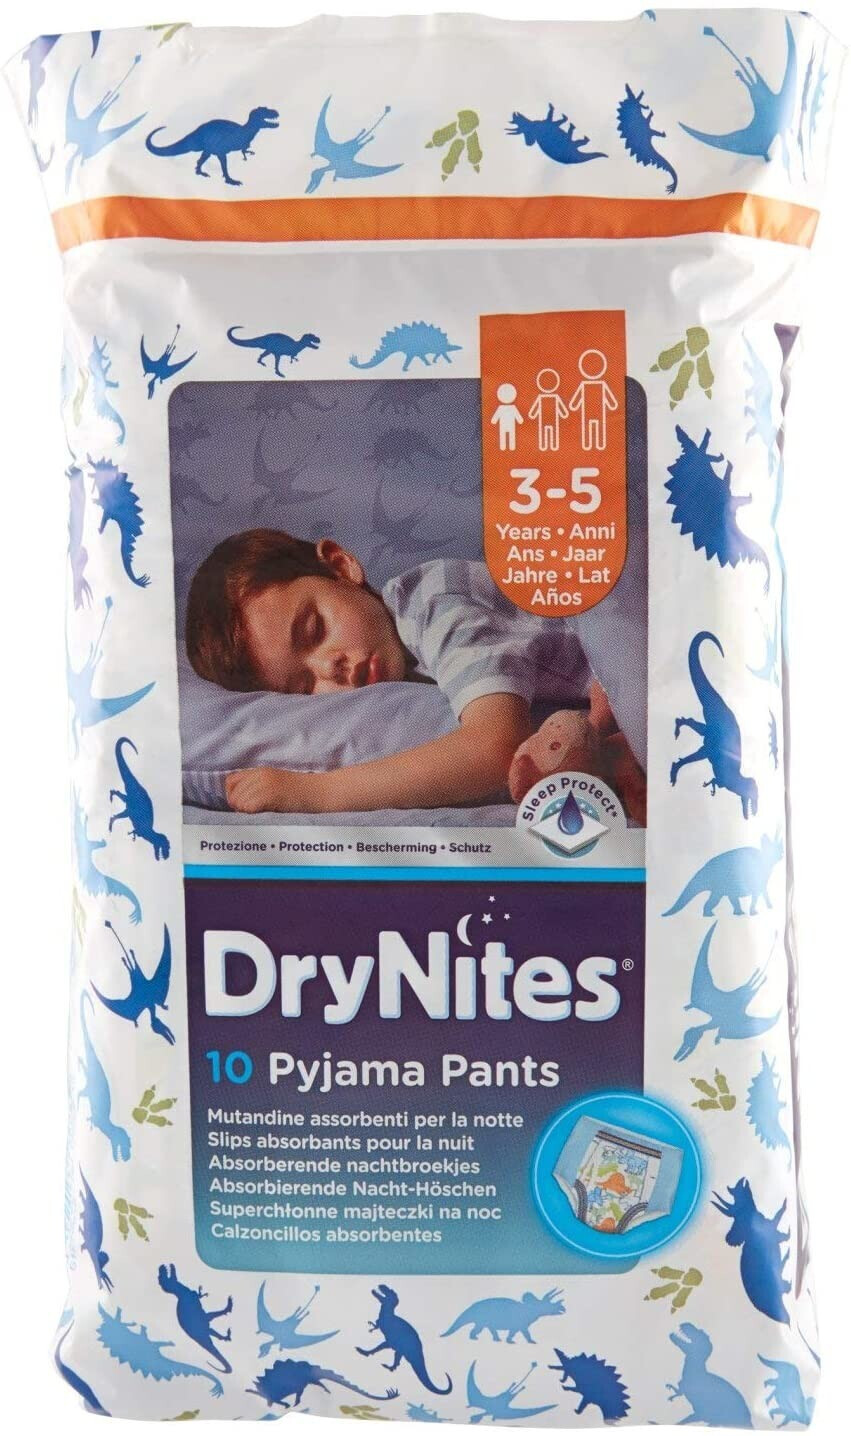 HUGGIES DryNites Sous-vêtements de nuit absorbants pour garçons